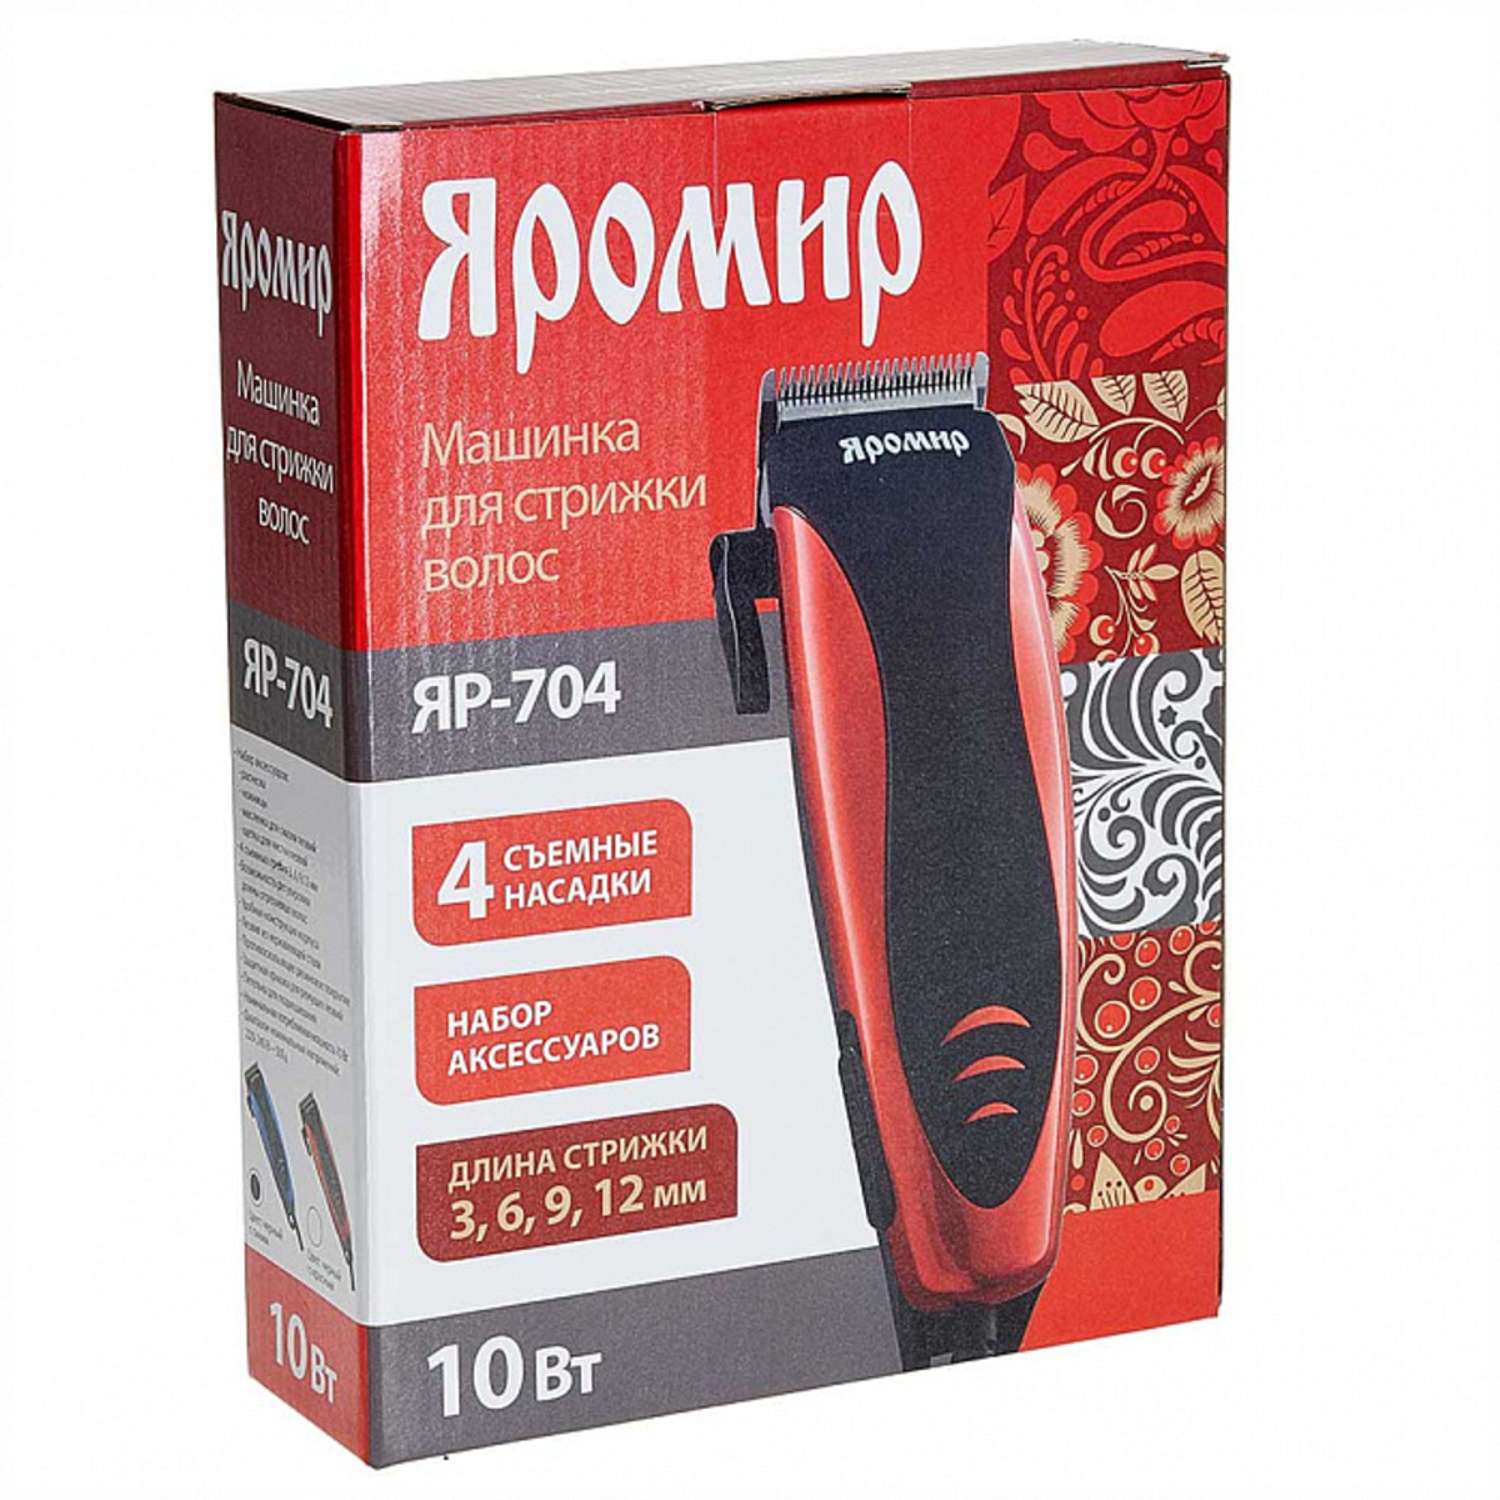 Машинка для стрижки волос Яромир ЯР-704 черный с красным 10Вт 4 съемных гребня - фото 3